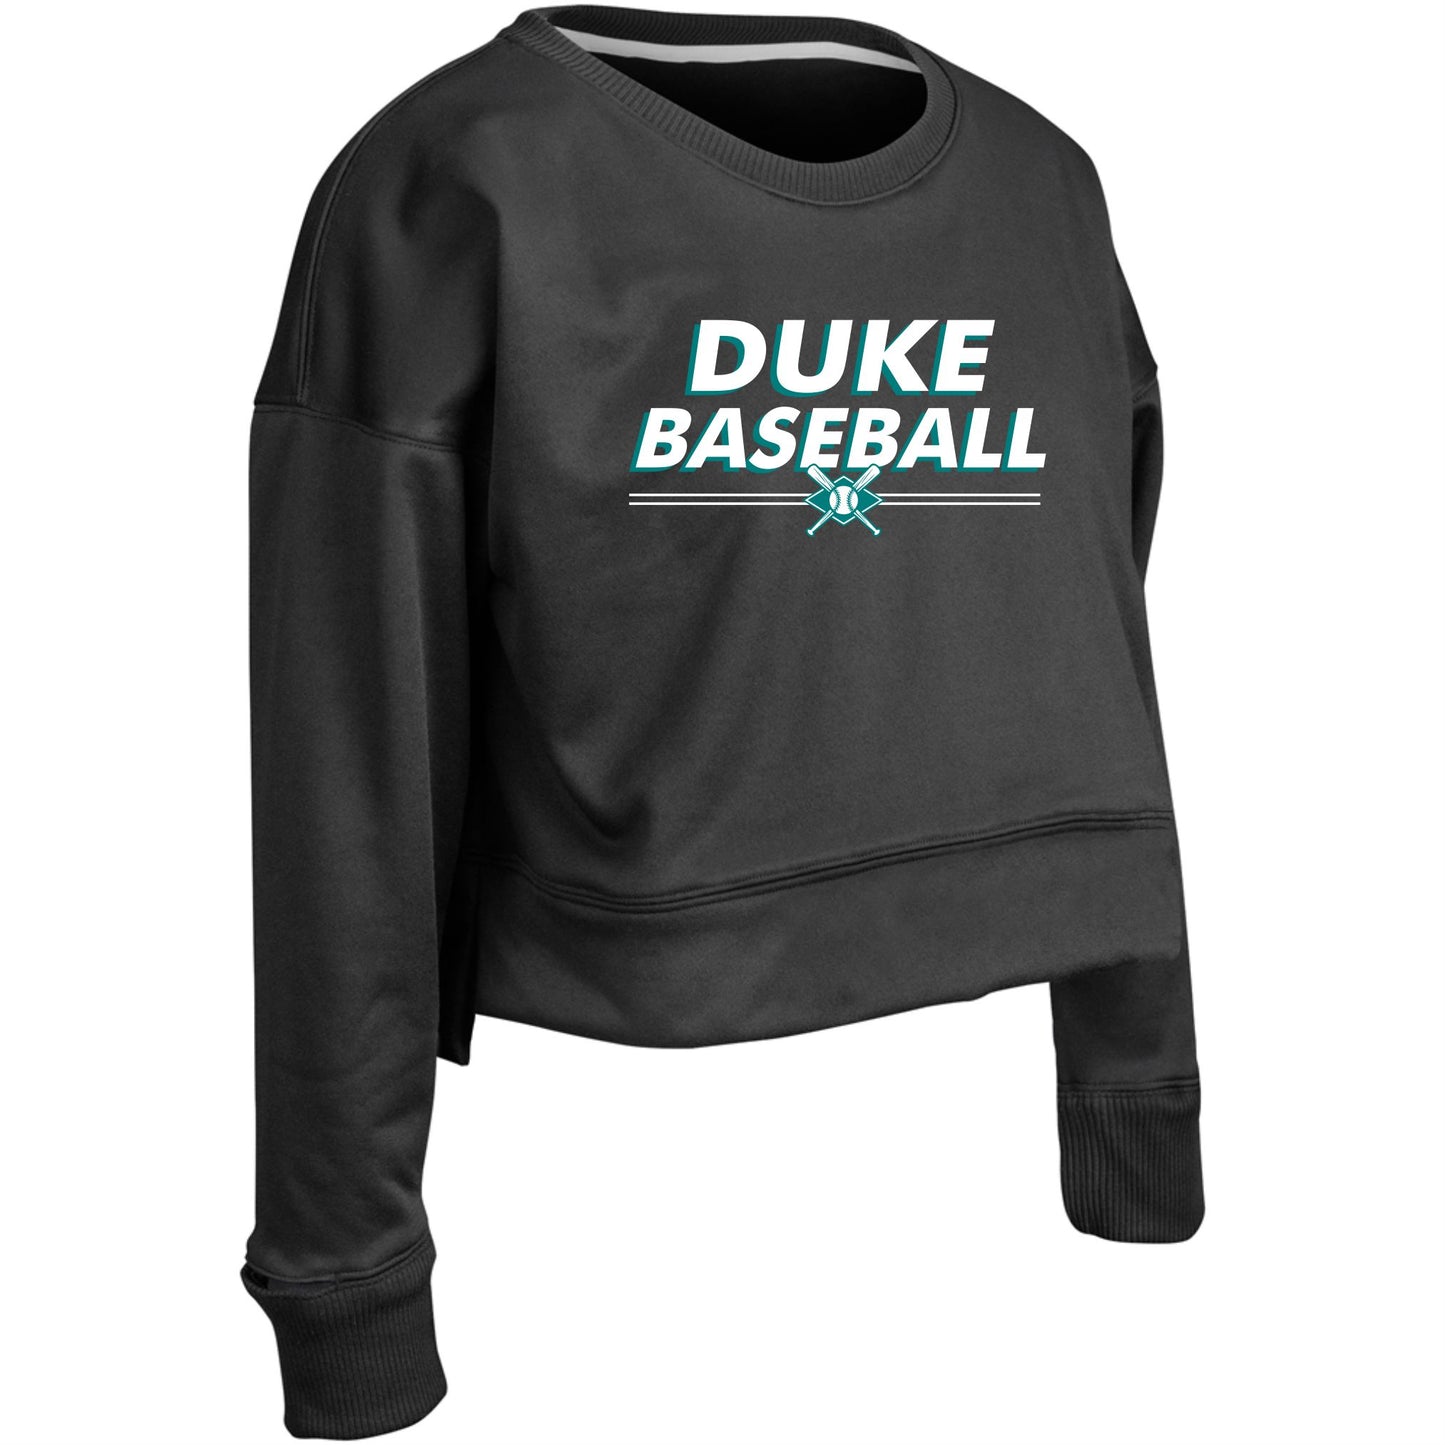 Duke Baseball Double Line Women's Wear